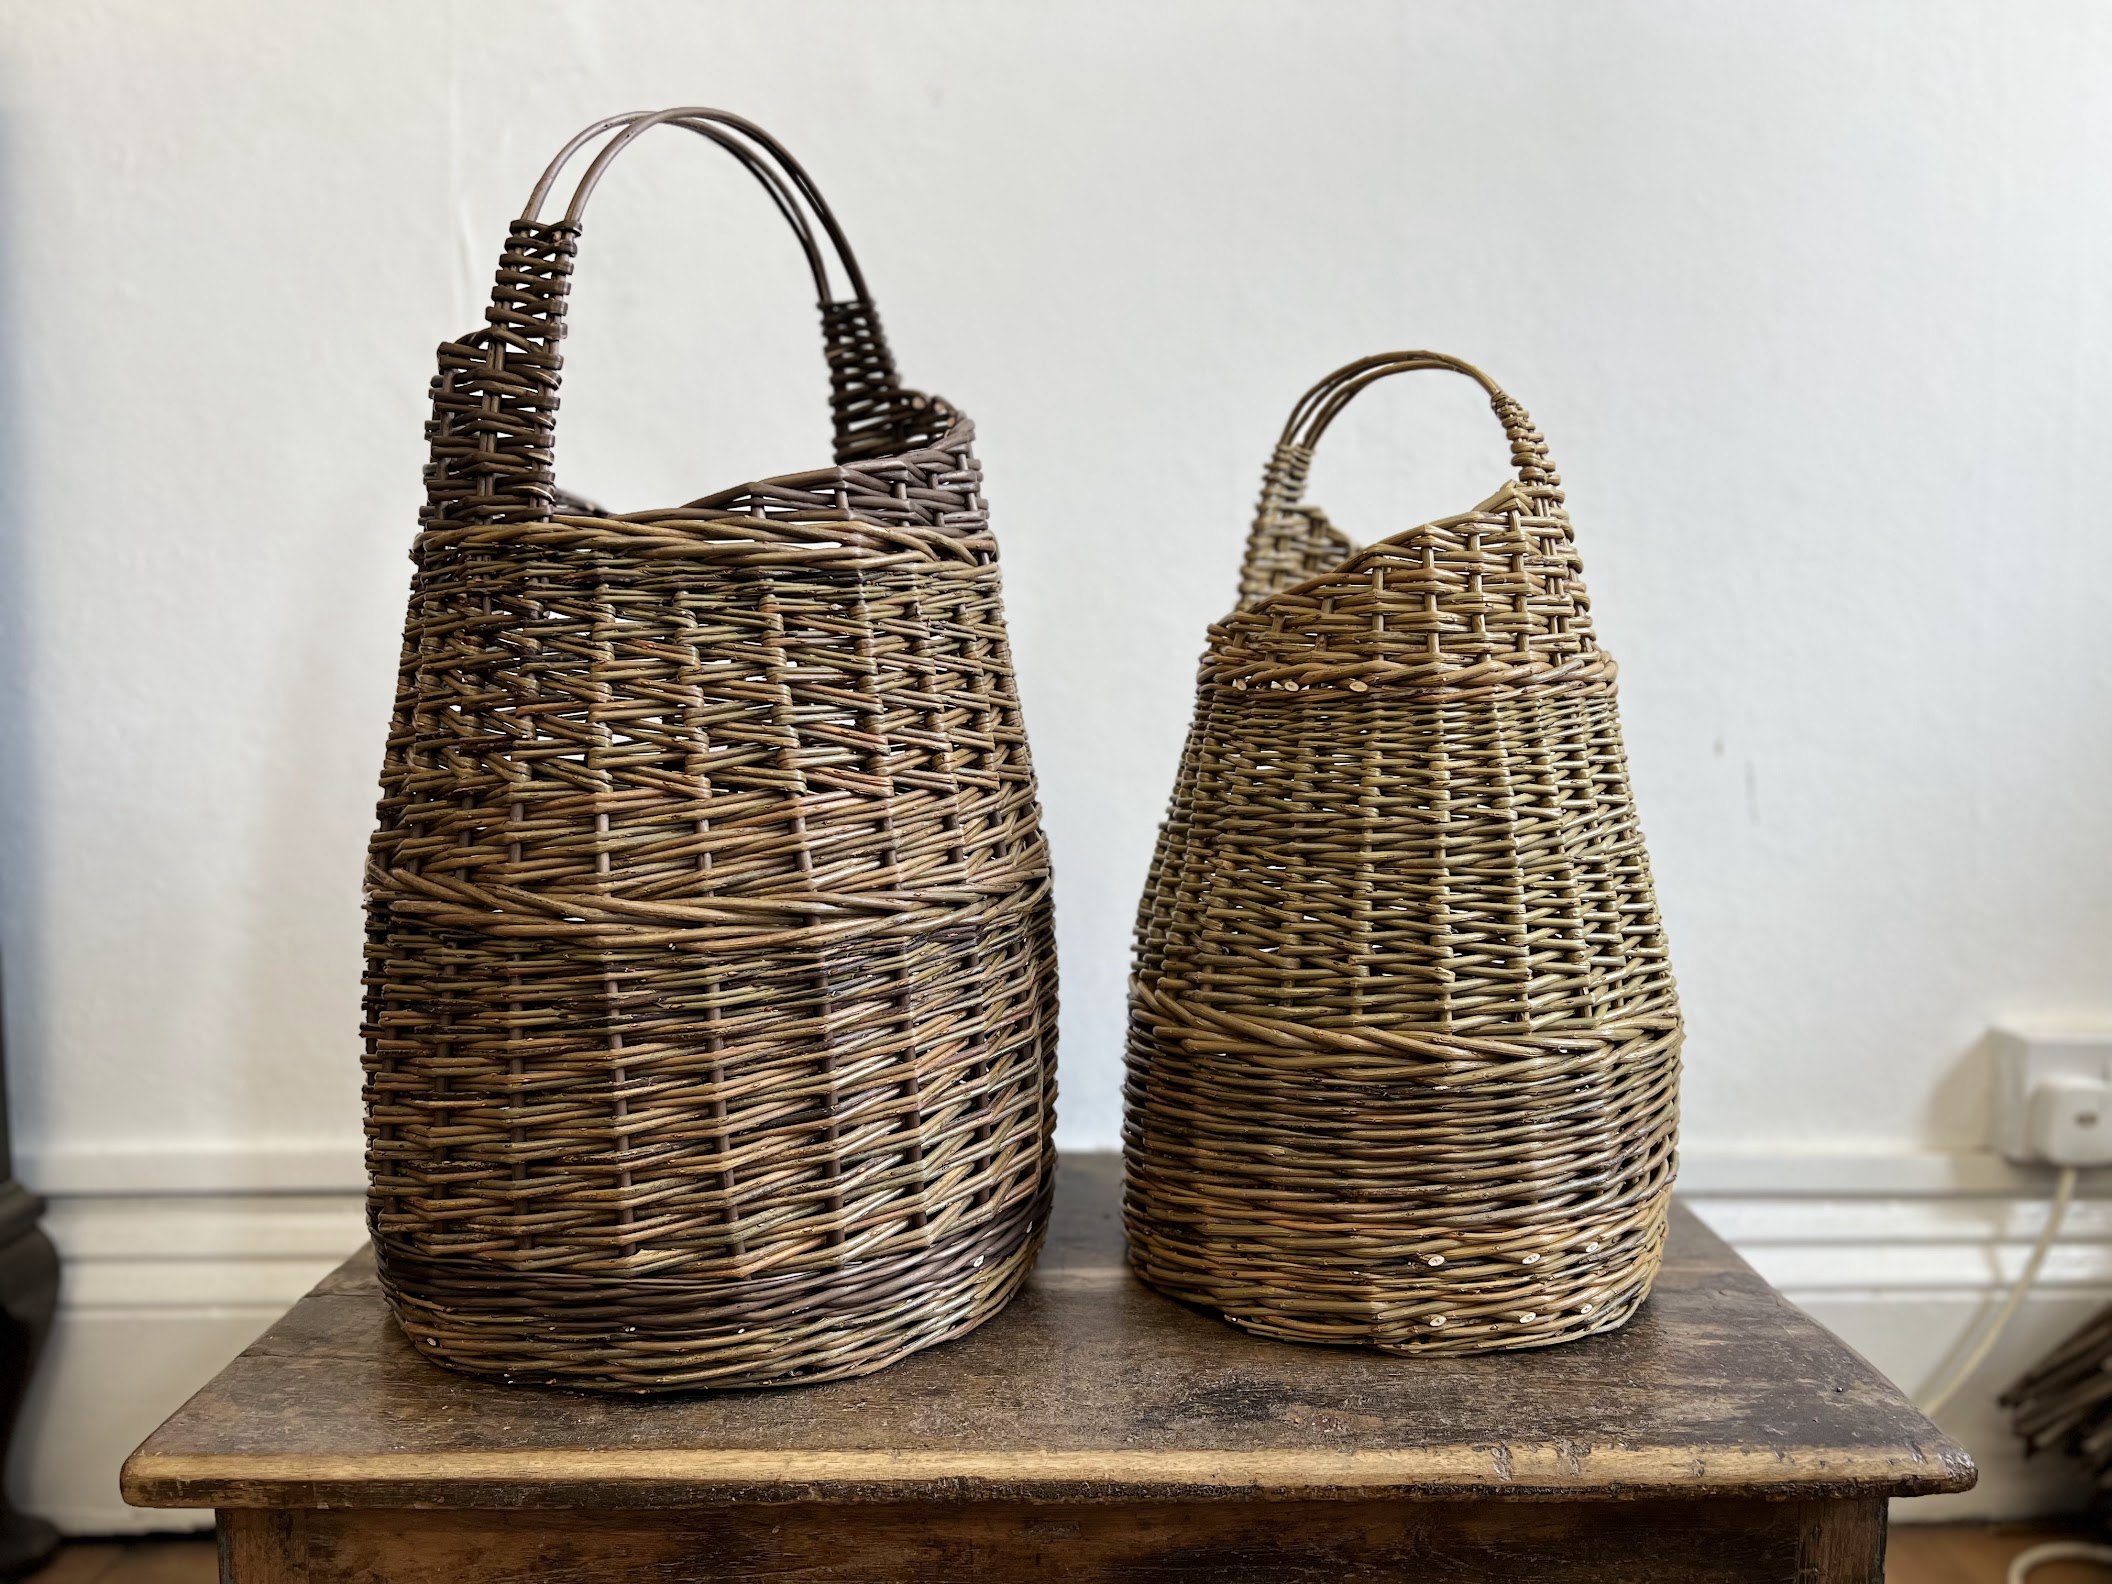 2 asymmetrical baskets